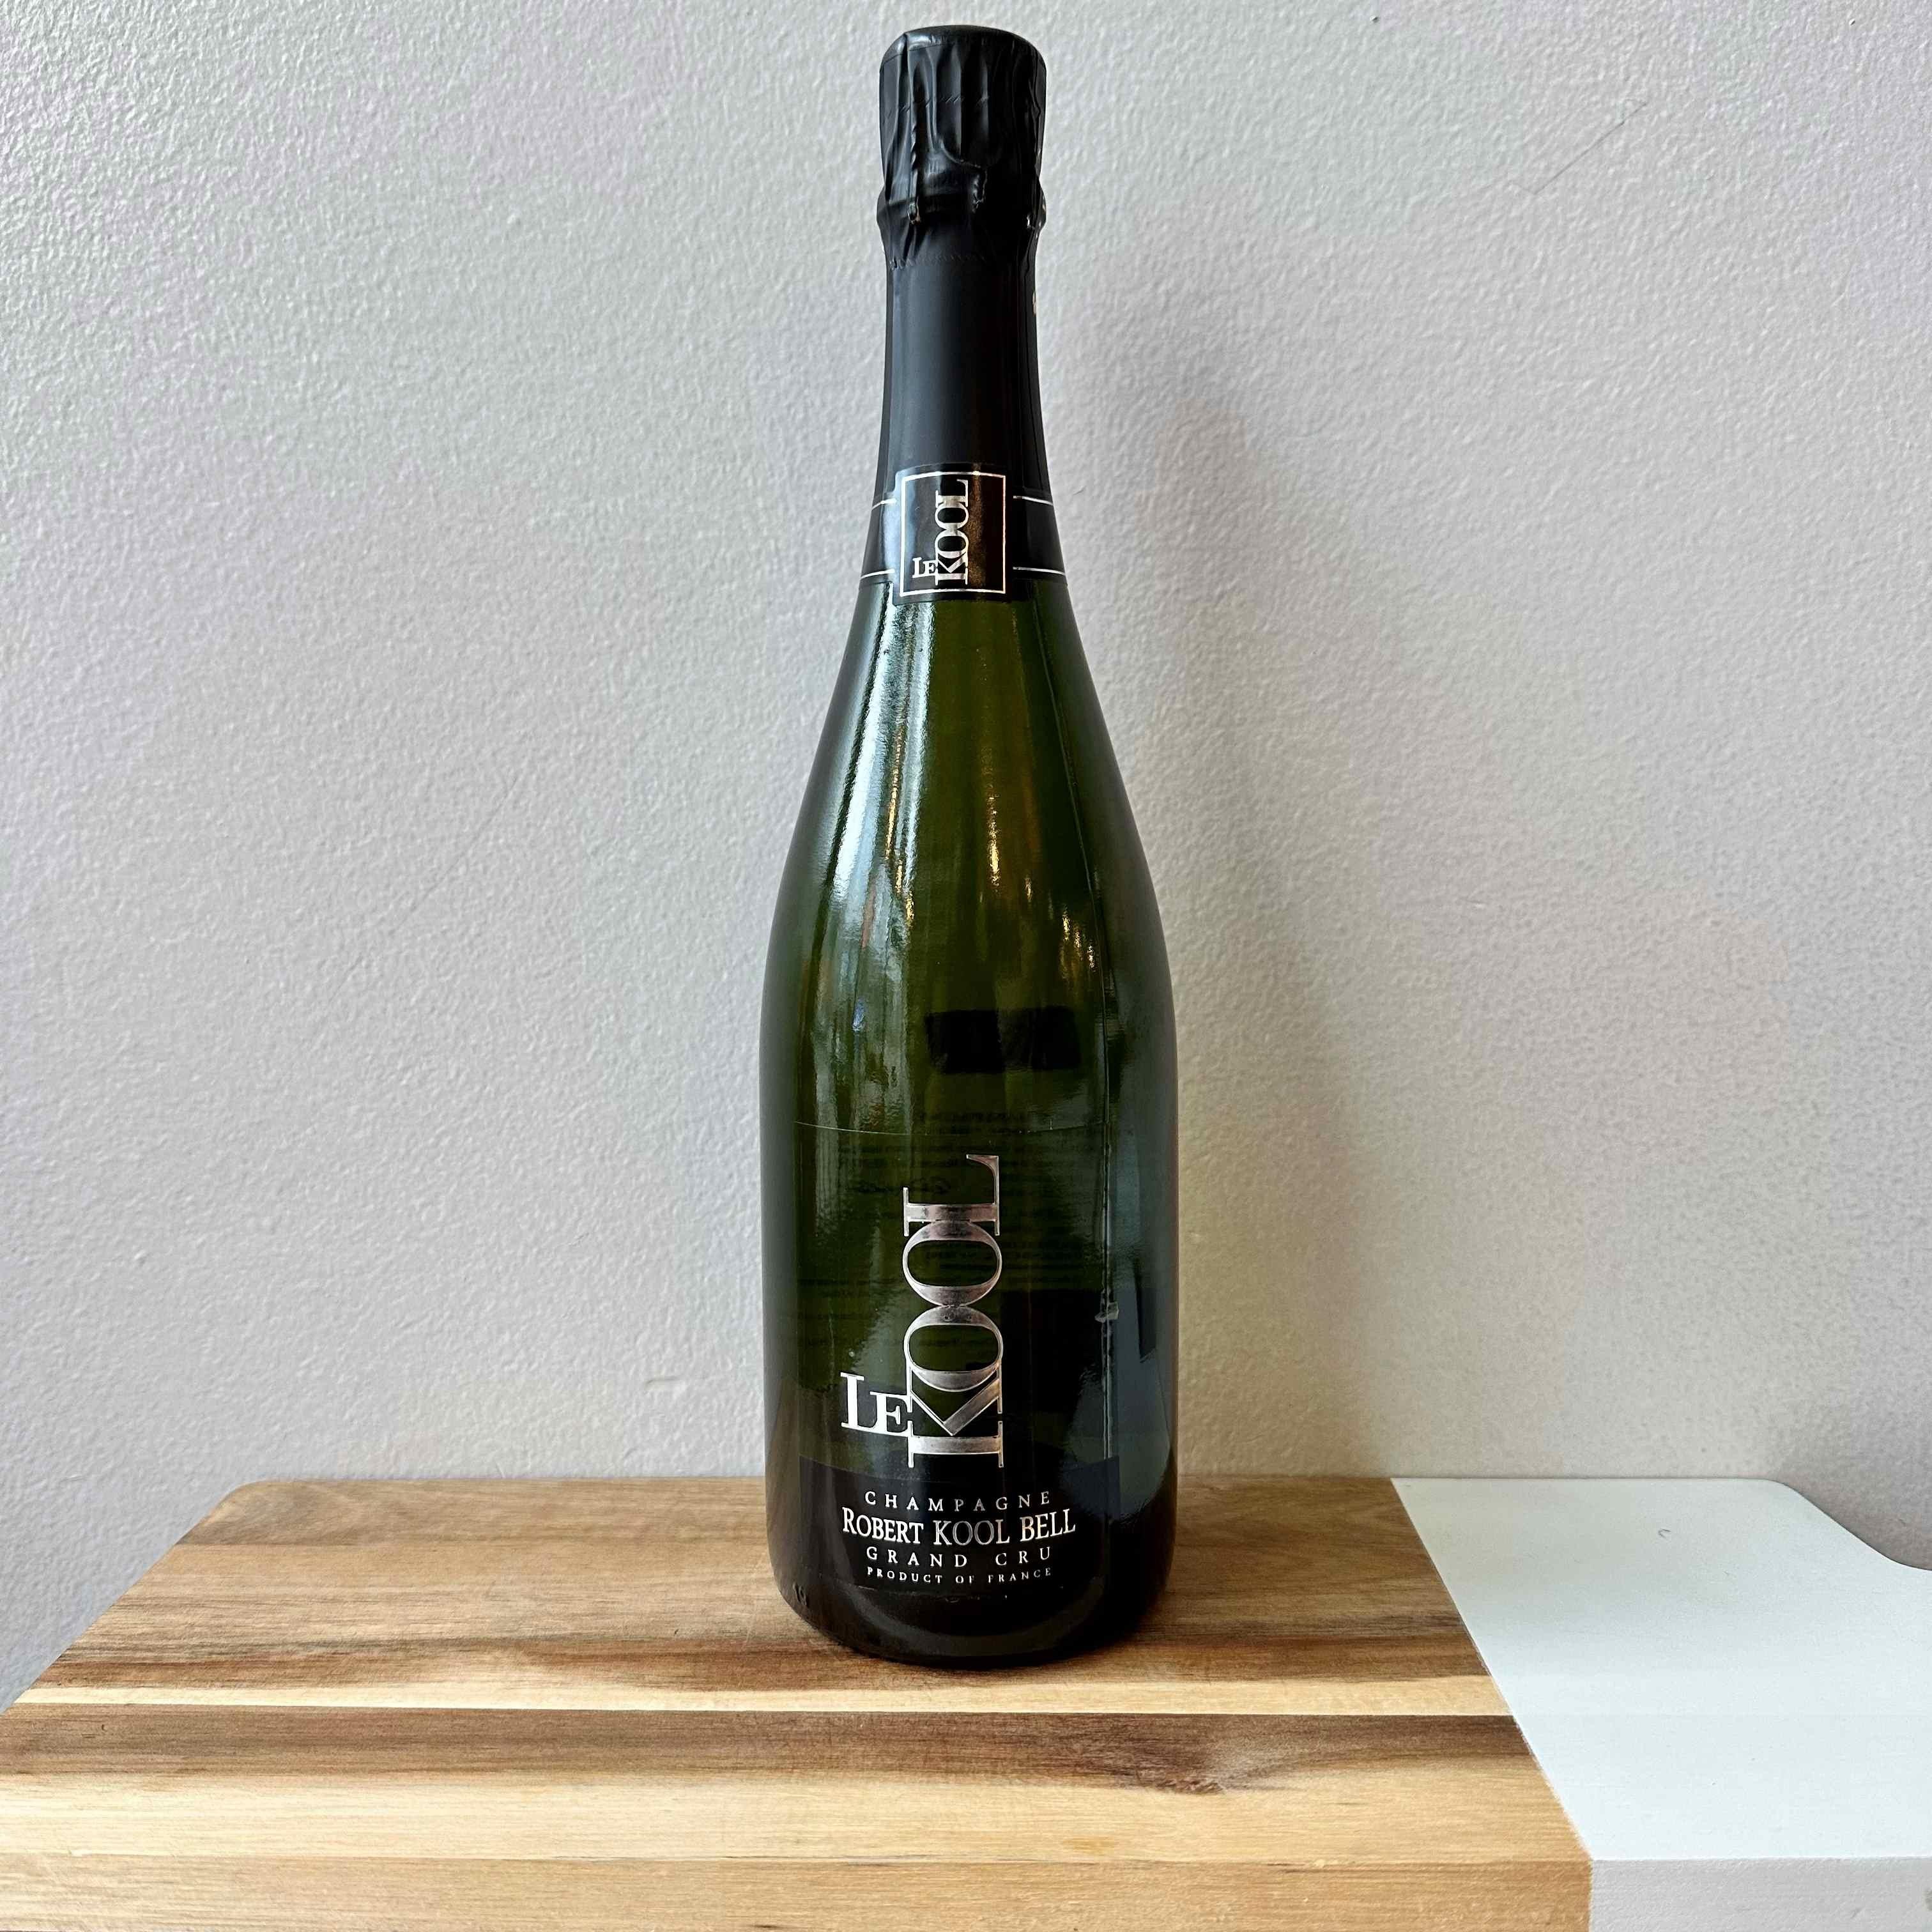 Robert Kool Bell "Le Kool" Champagne N/V France